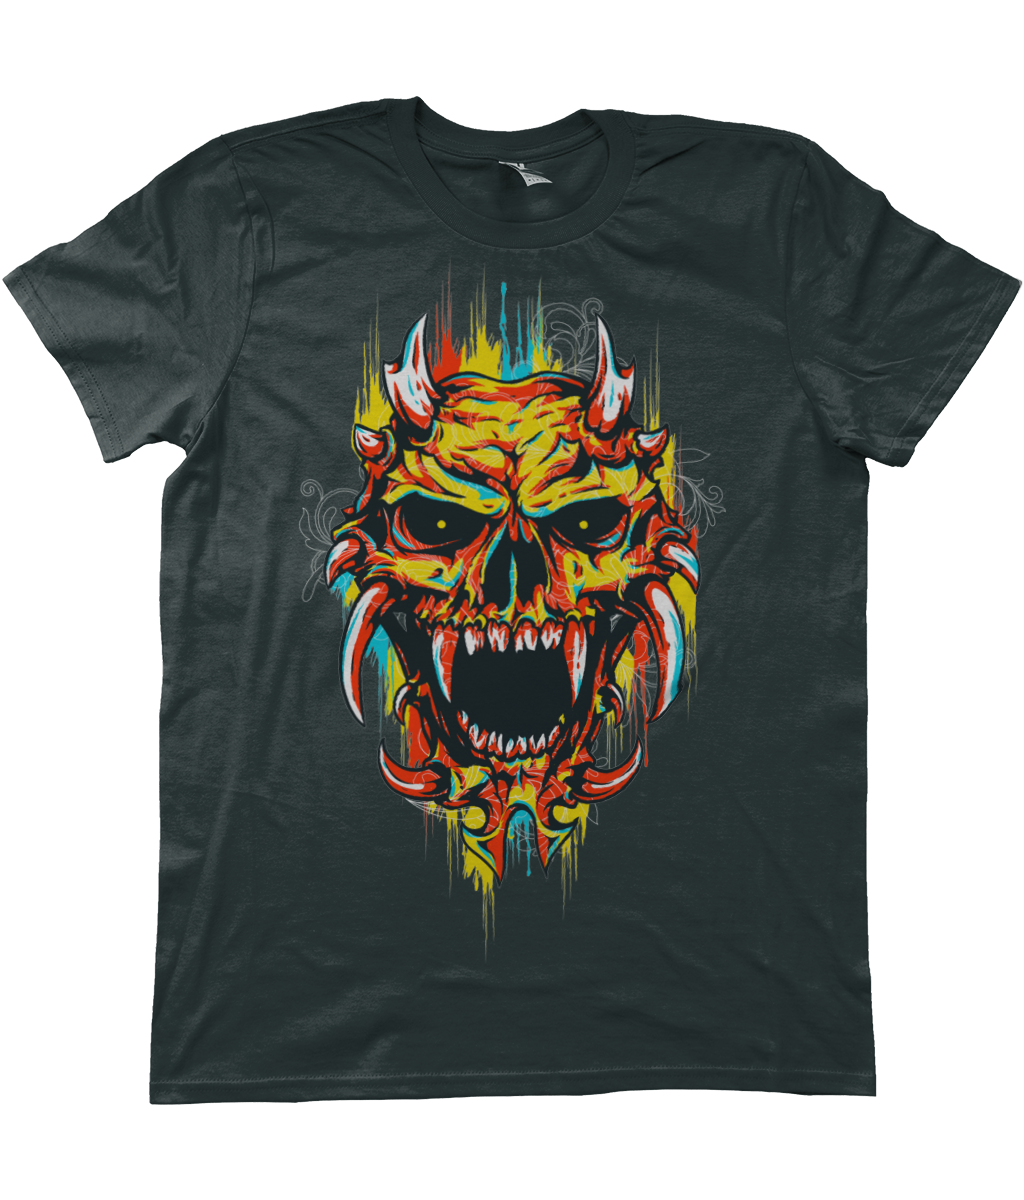 Urban Graffiti Demon Skull Heart Hearted T-Shirt - Kuzi Tees